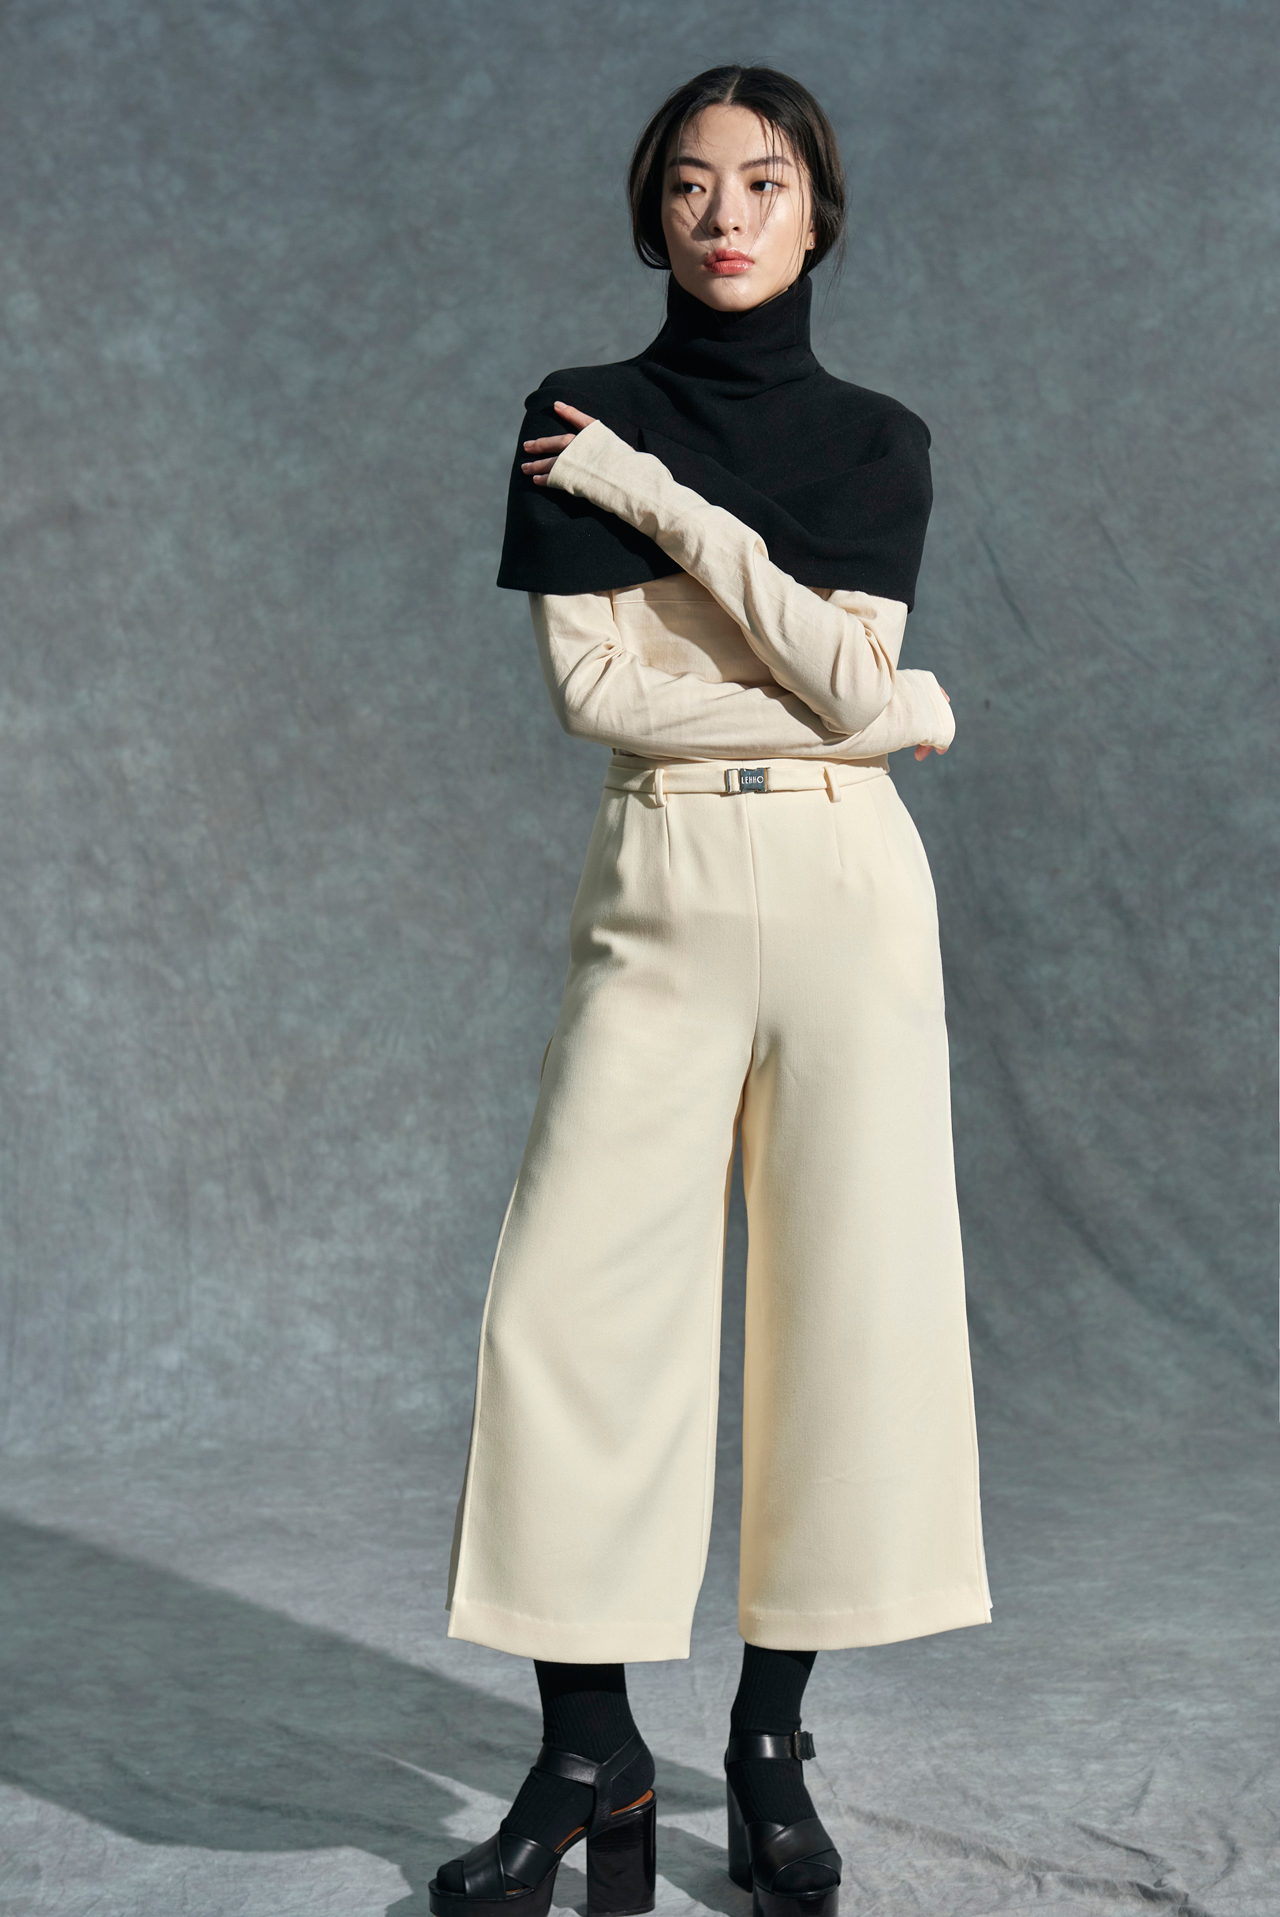 사진제공 : 국내 여성복 디자이너 브랜드 레호(LEHHO)